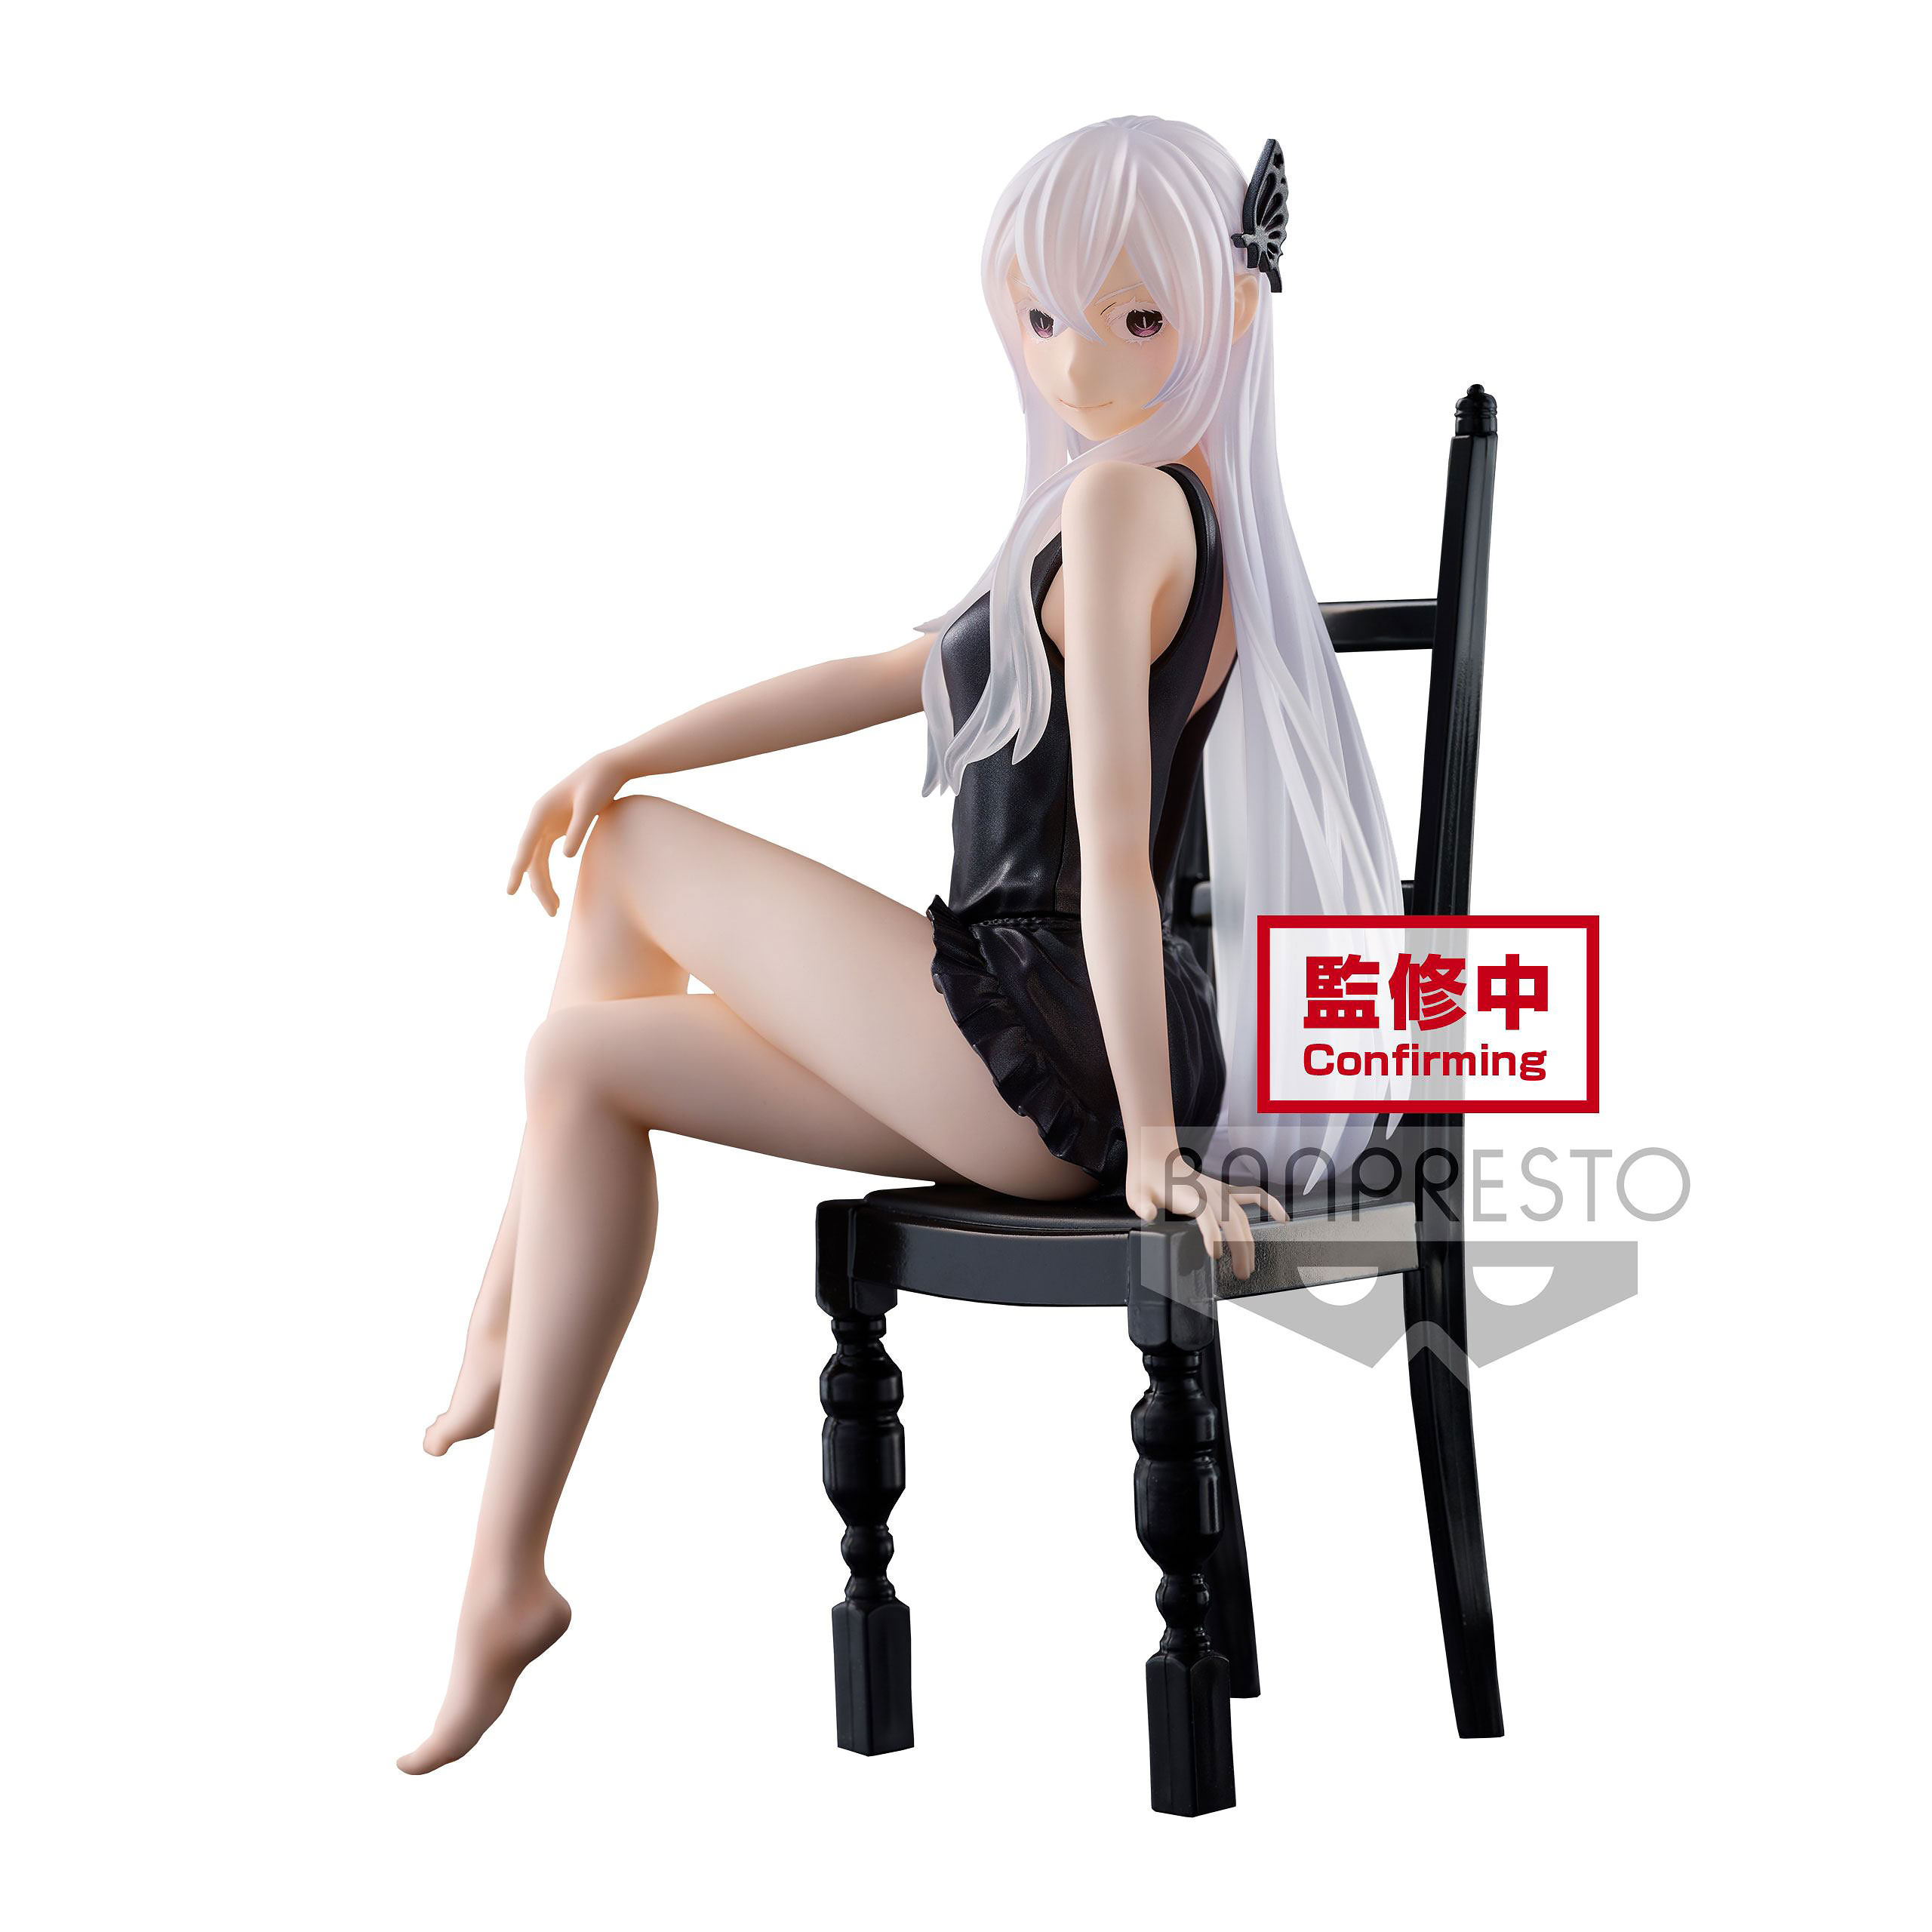 Re:Zero - Figurine Echidna Relax Time 21 cm